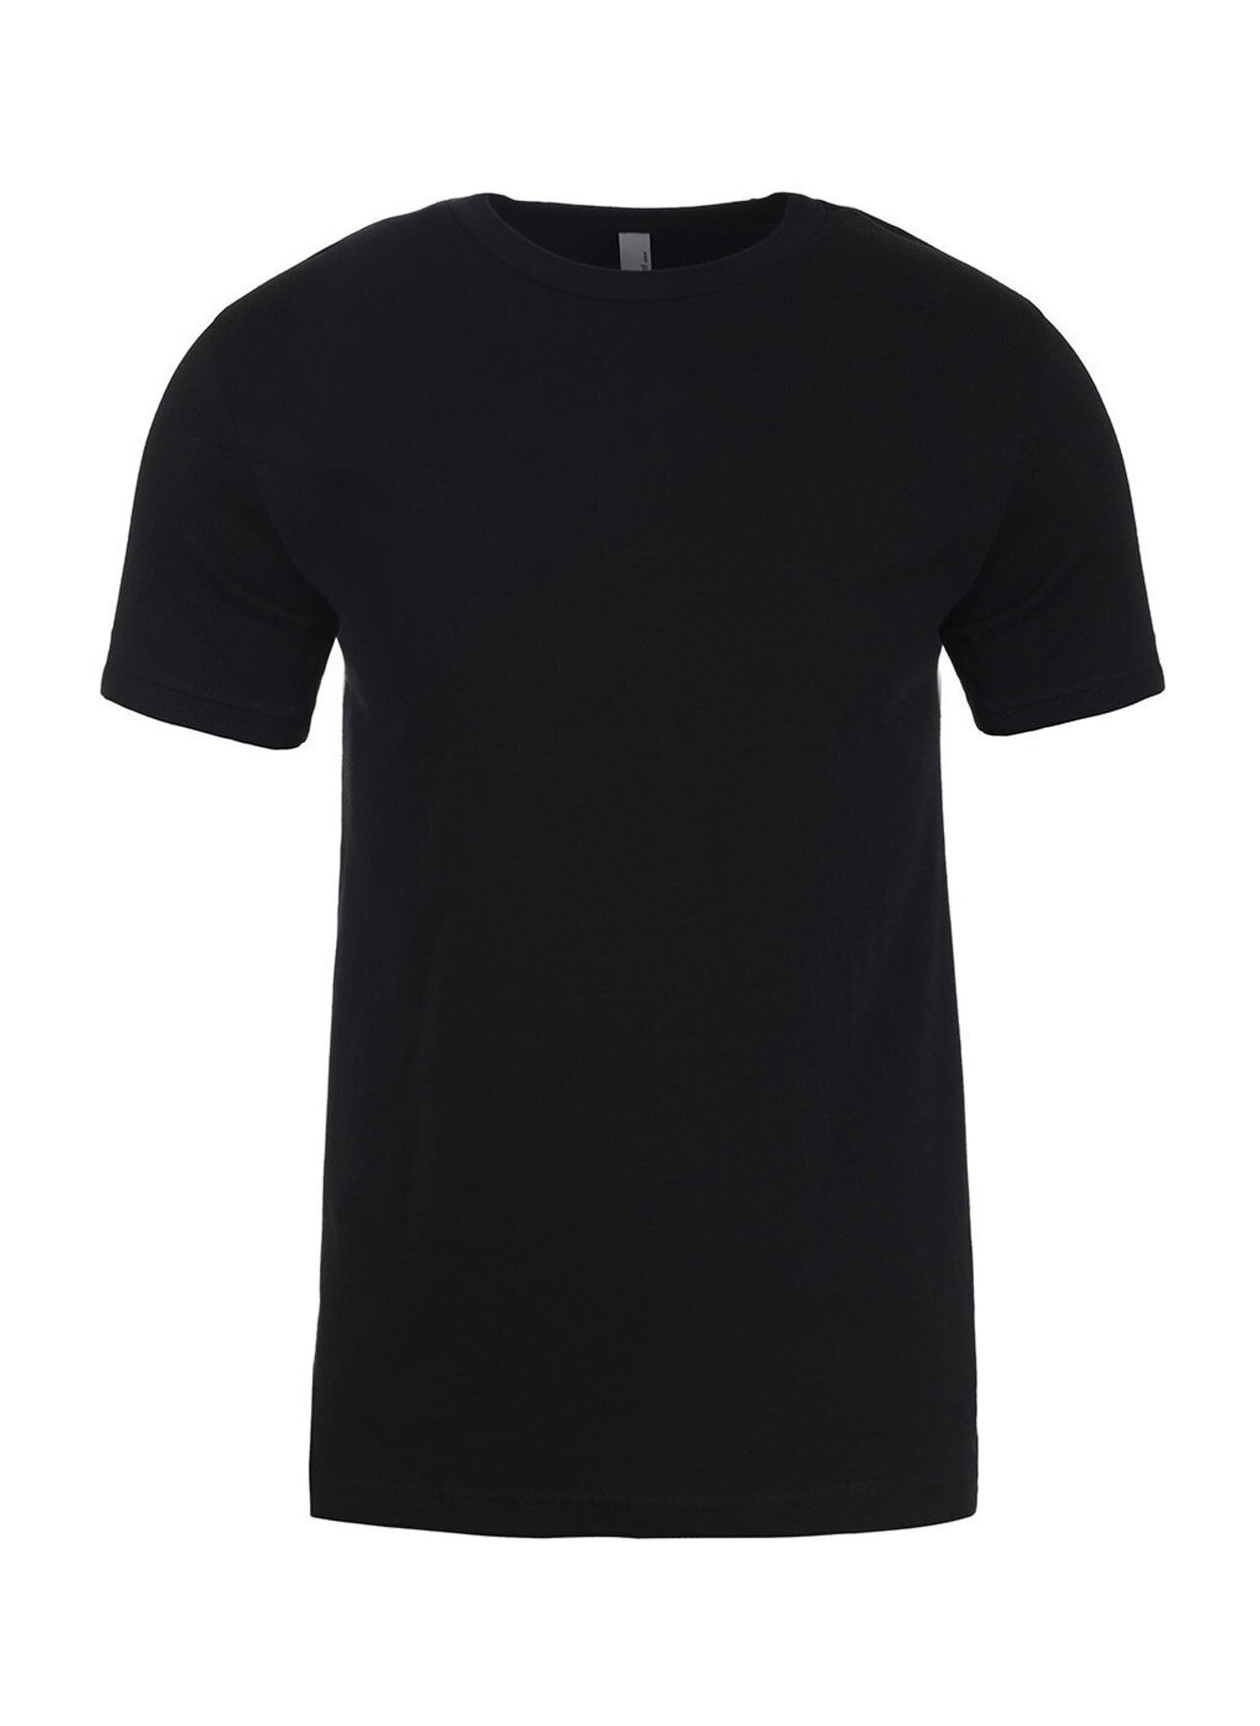 Next Level Men's Black Unisex Cotton T-Shirt